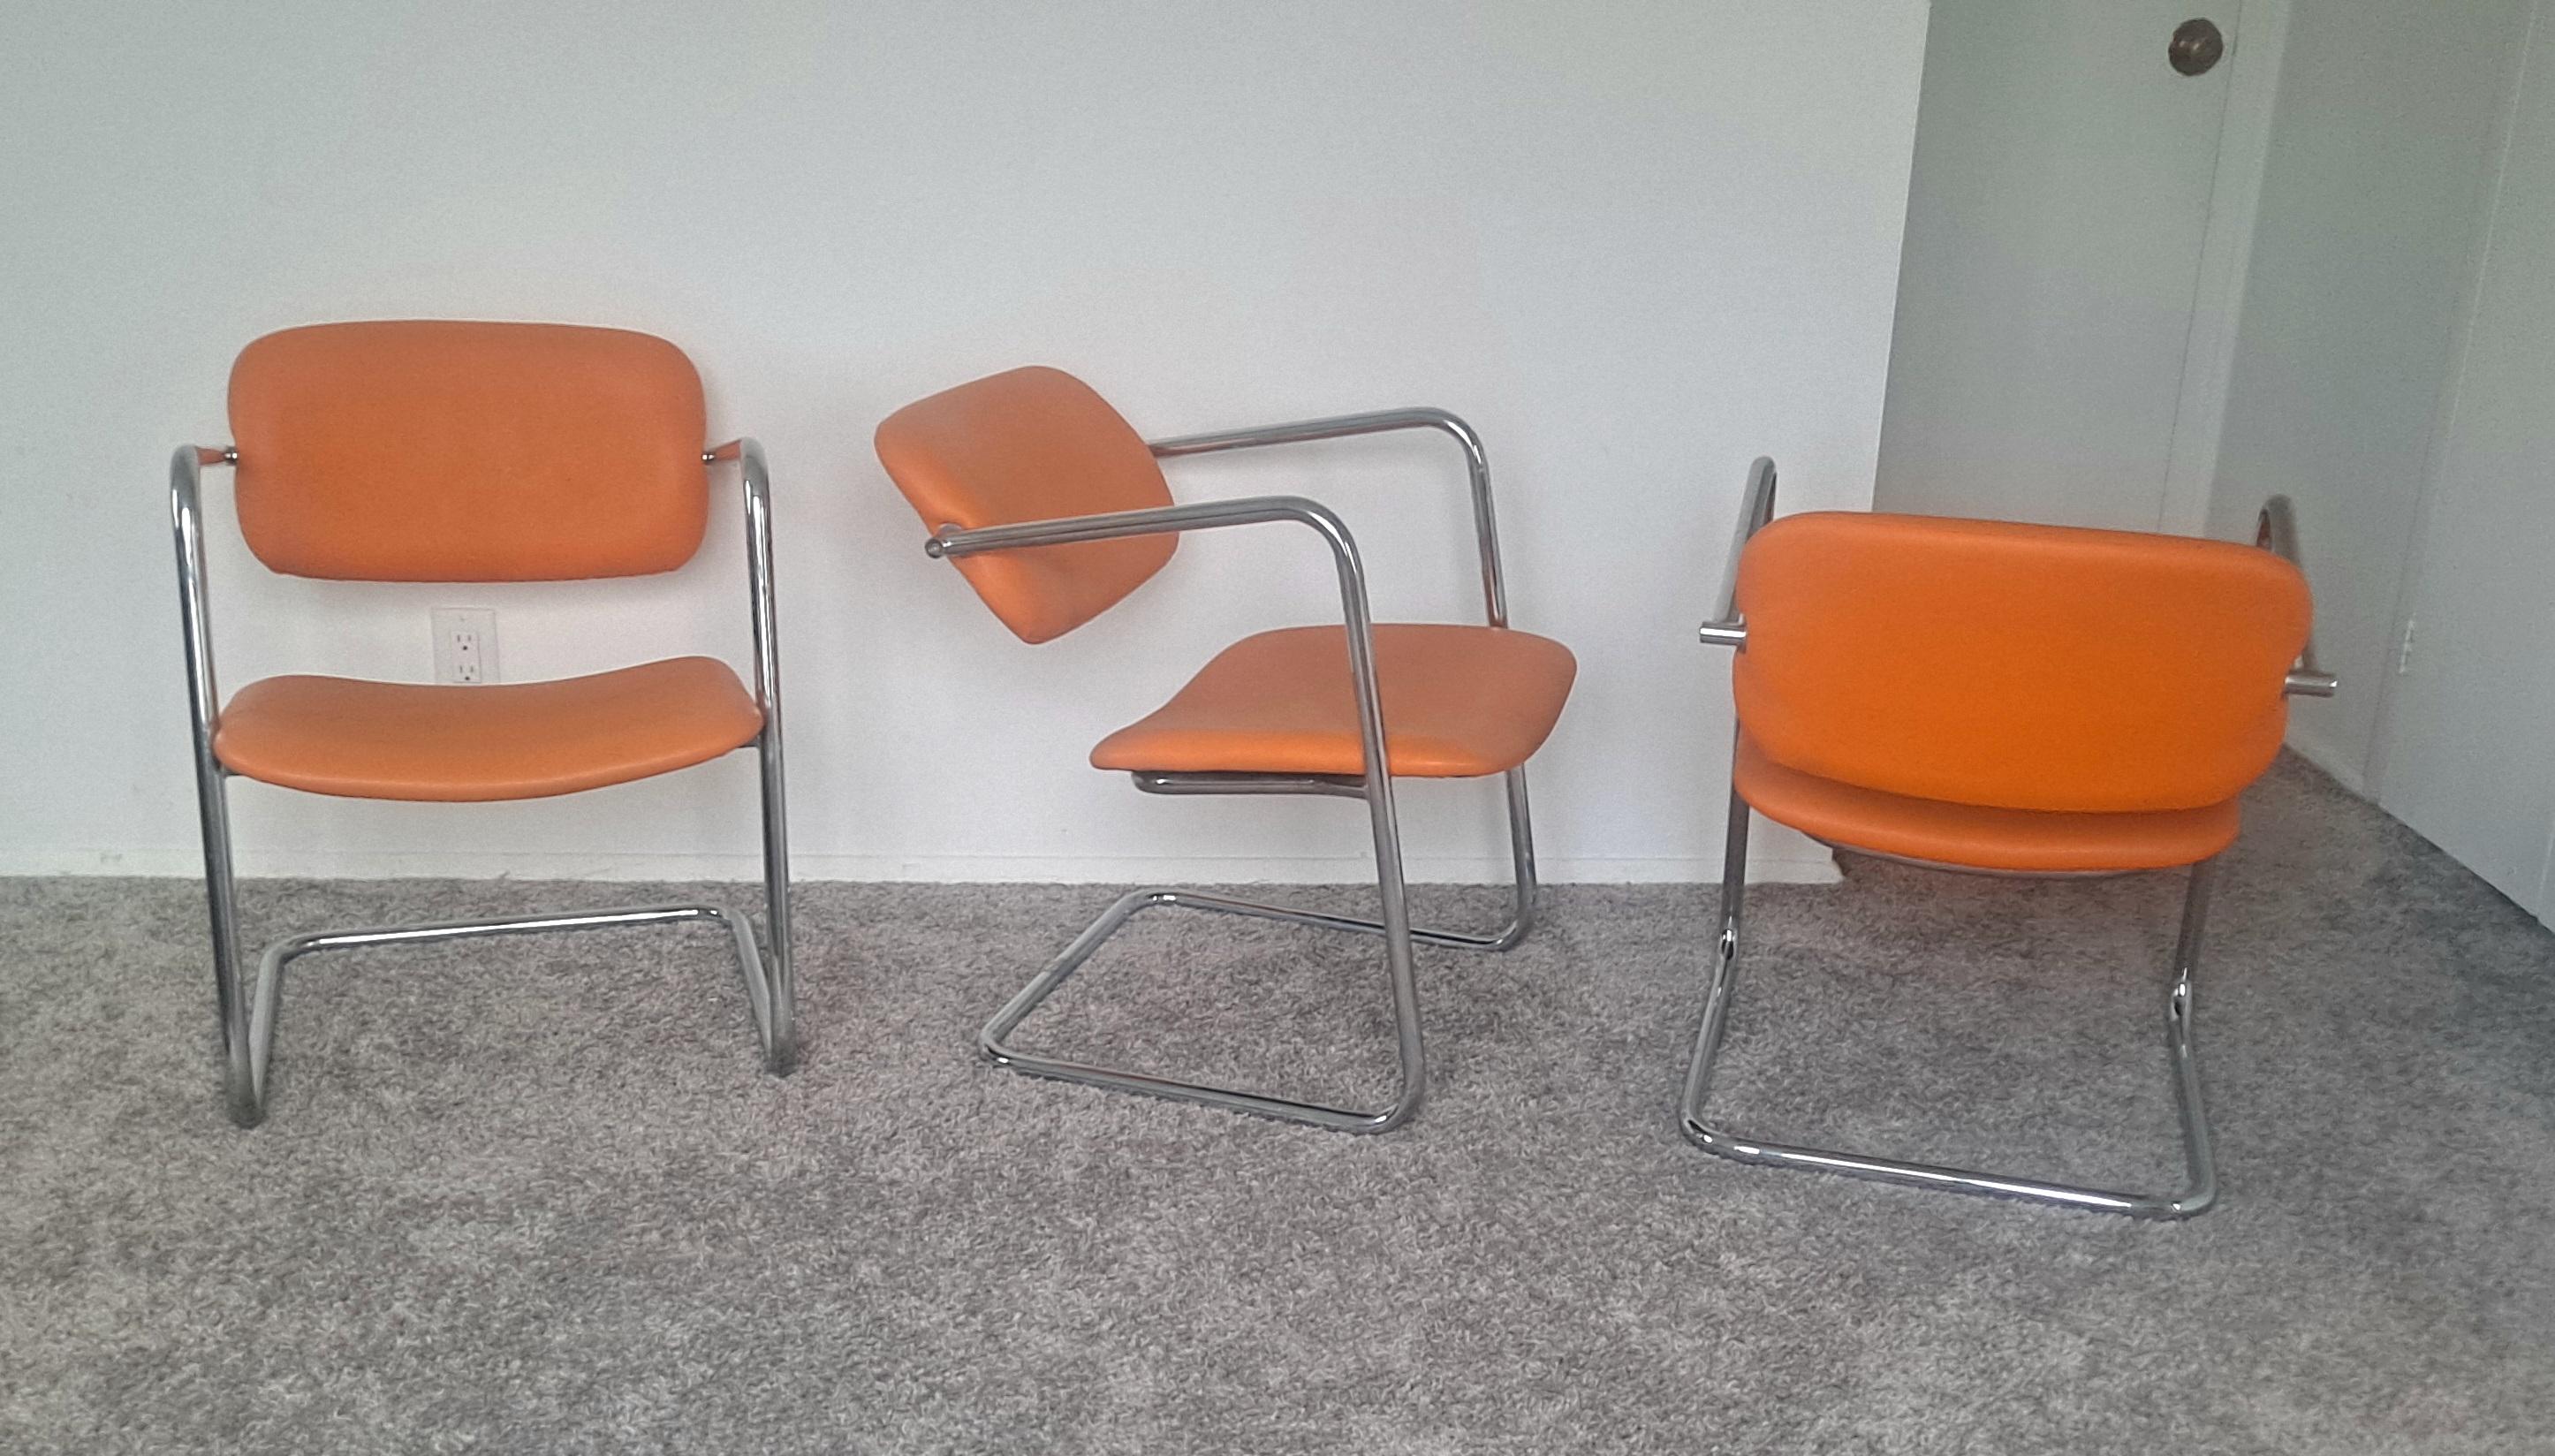 Ensemble de 3 chaises scandinaves de couleur orange ,très confortables le dossier est réglable et il peut être ajusté comme sur les photos .  